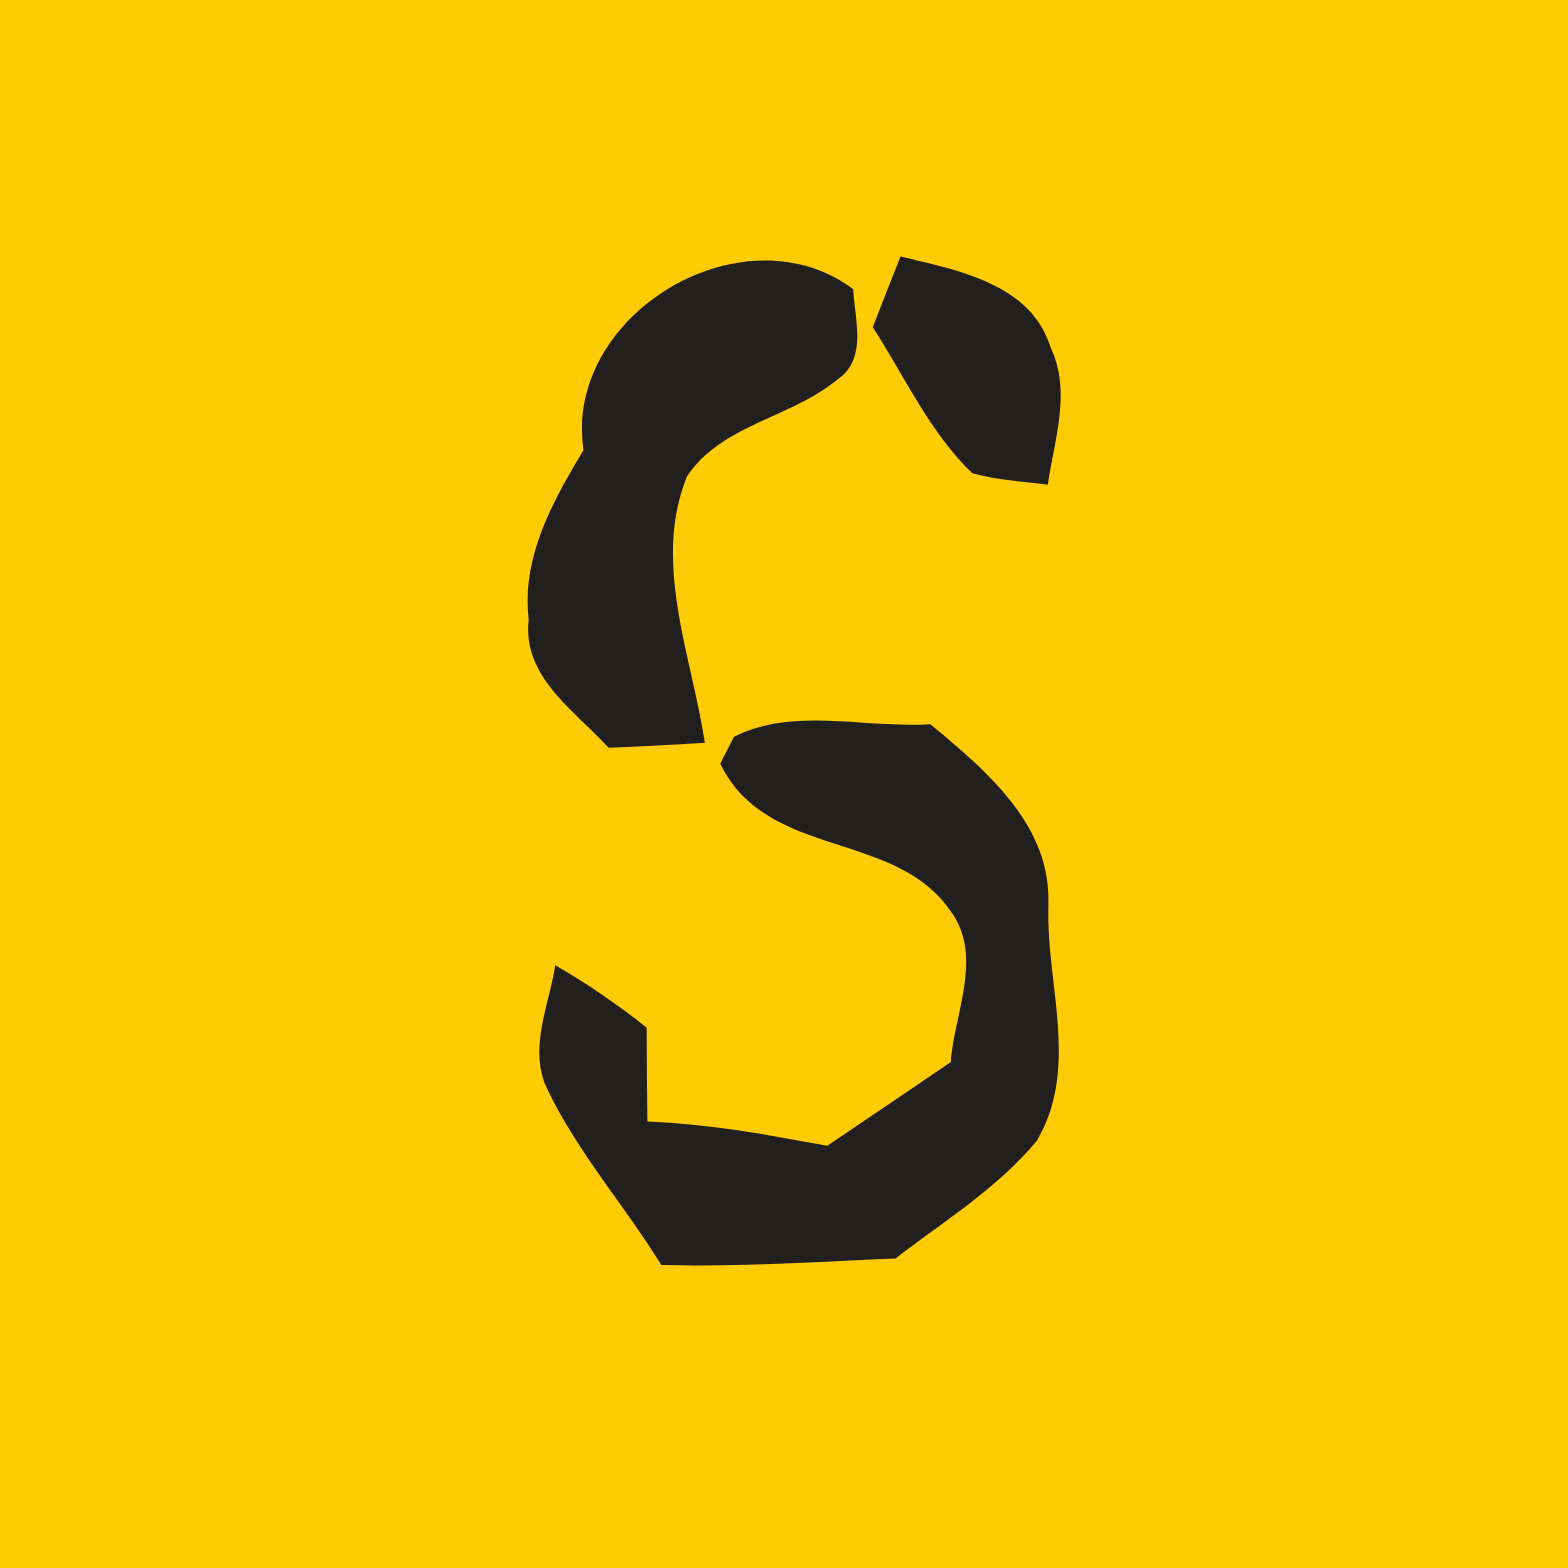 Sohu.com logo (transparent PNG)